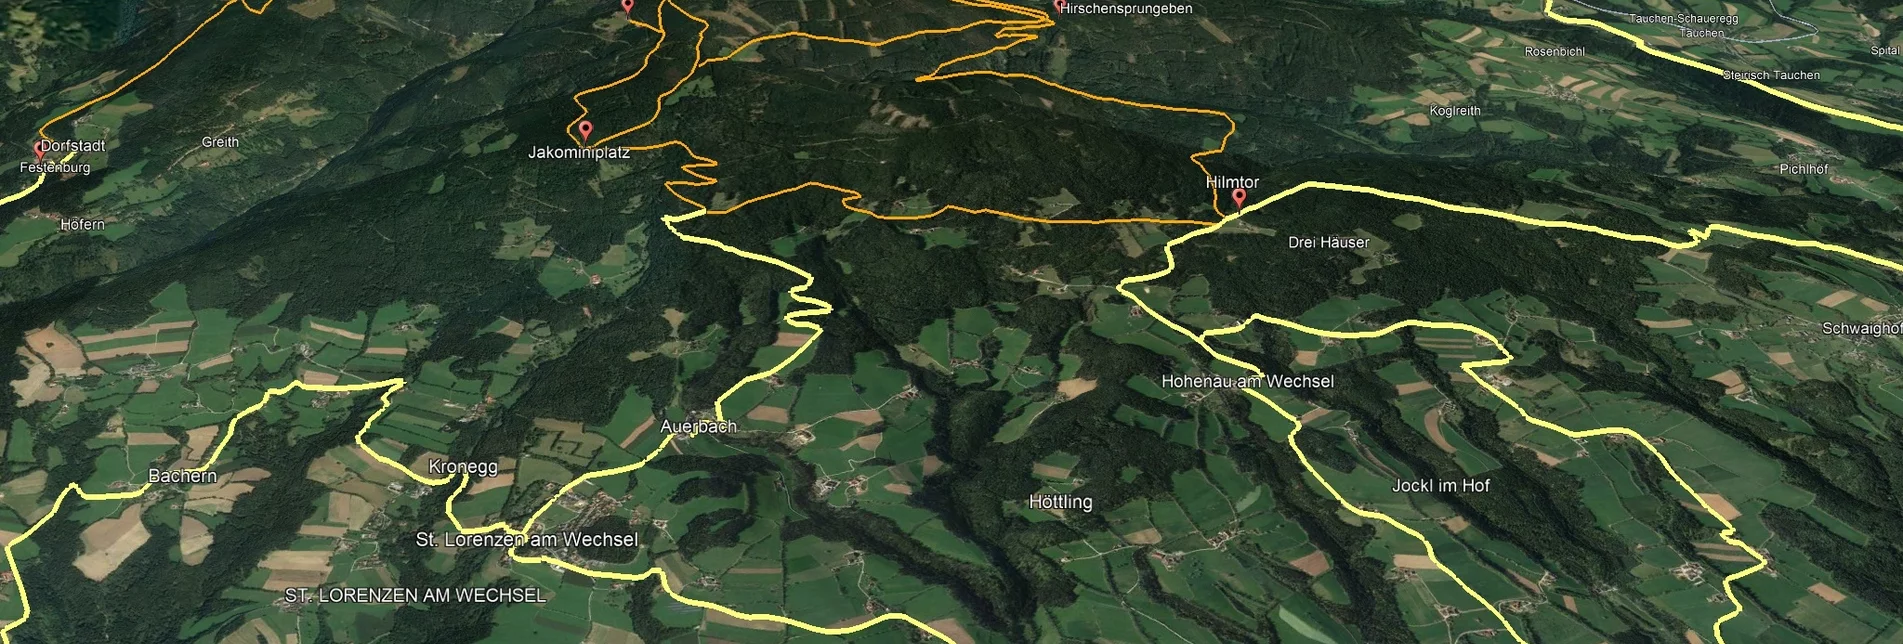 Mountain Biking Styrian Wexl Trails - feeder road from Festenburg to Dorfstatt - Touren-Impression #1 | © Verein Tourismusentwicklung Steirischer Wechsel